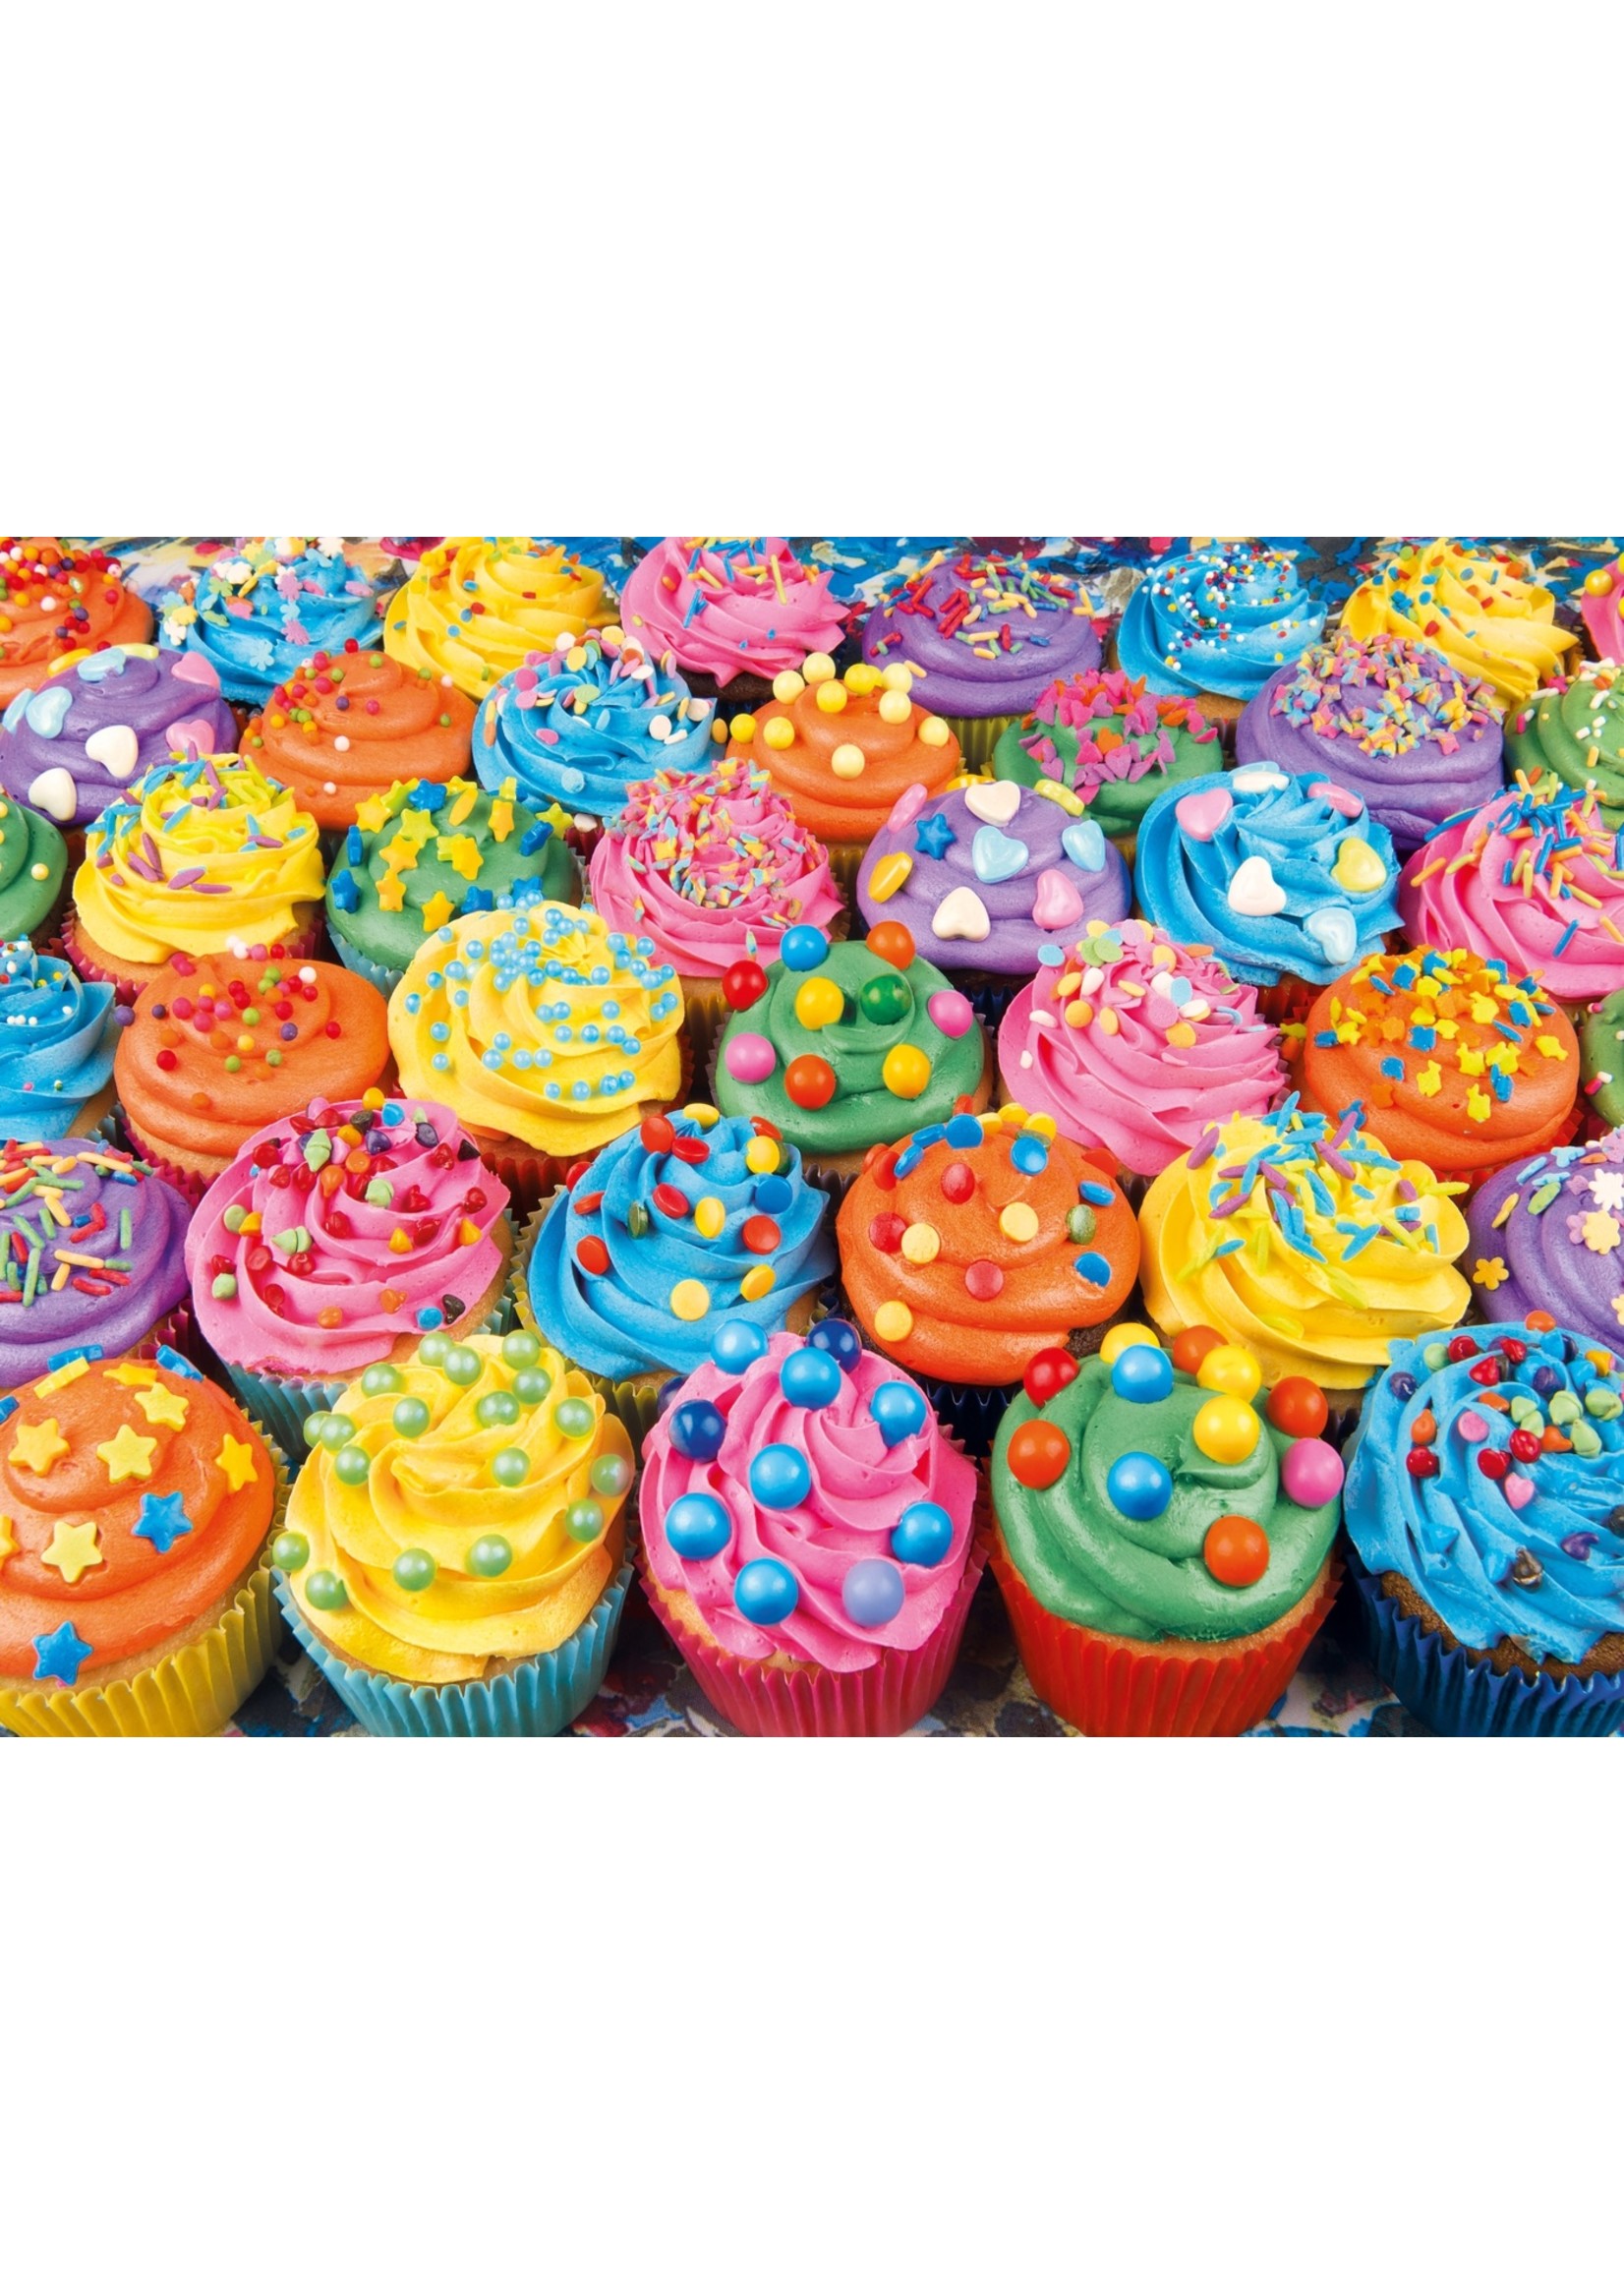 Clementoni Colorful Cupcakes - 500 Piece Puzzle